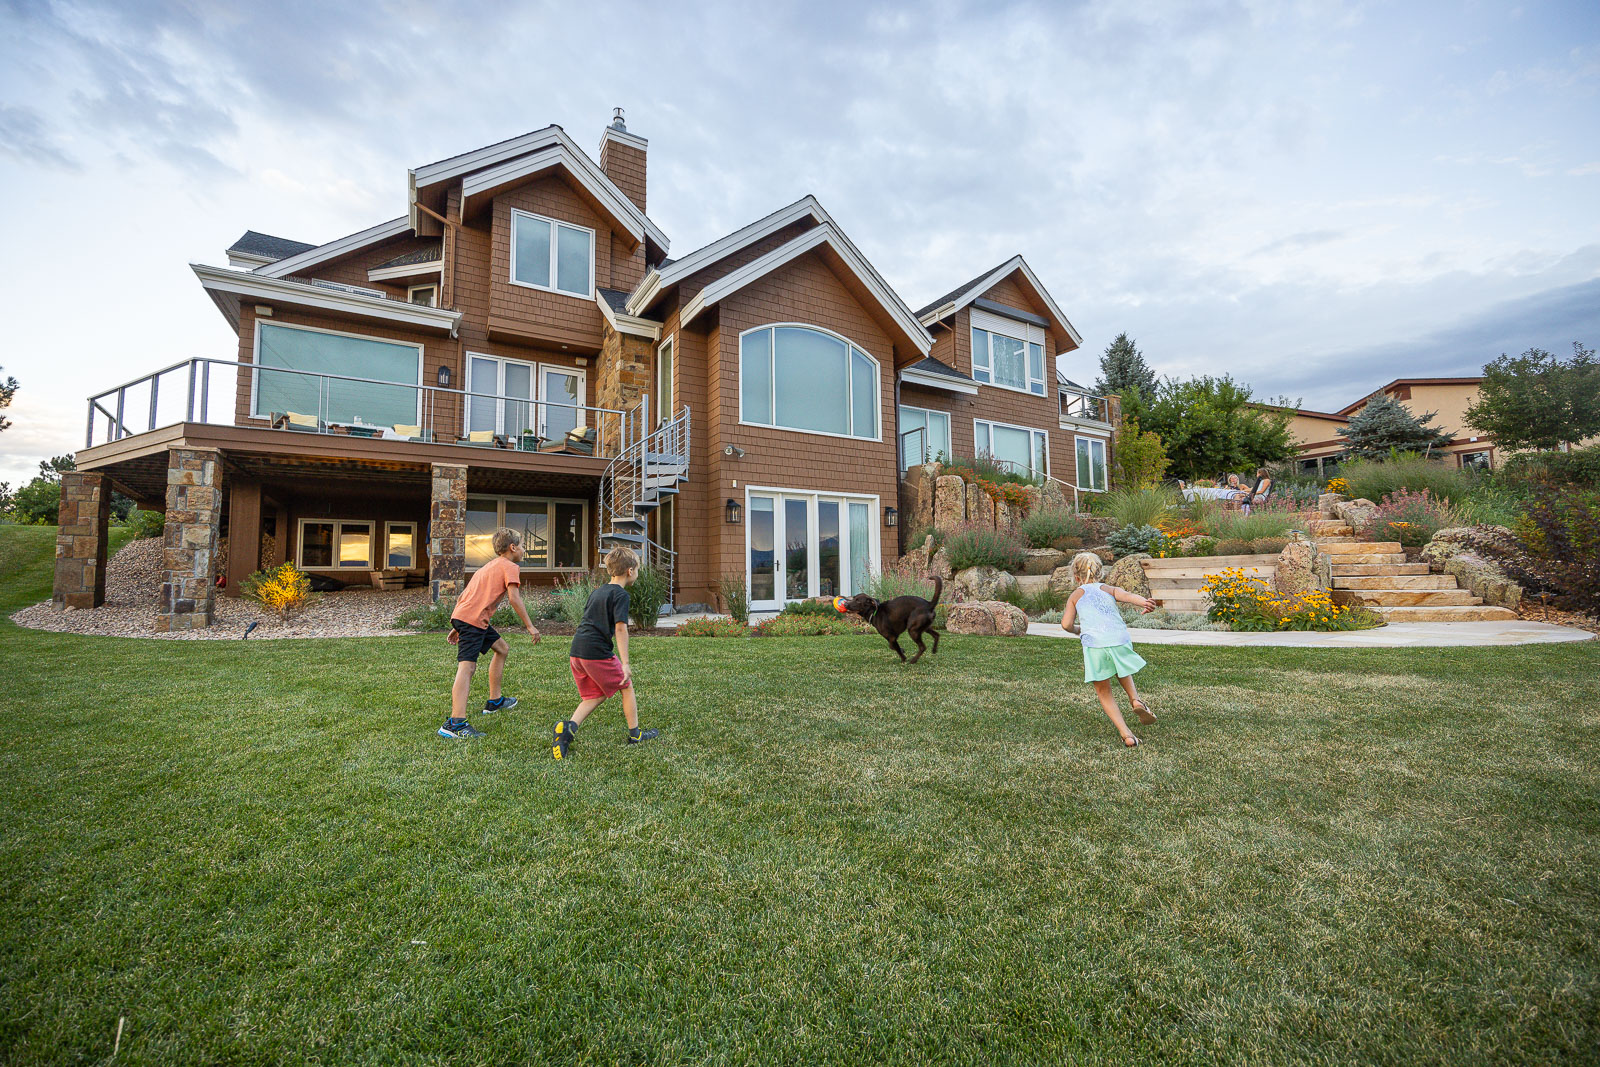 Residential landscape design kids dog grass 3